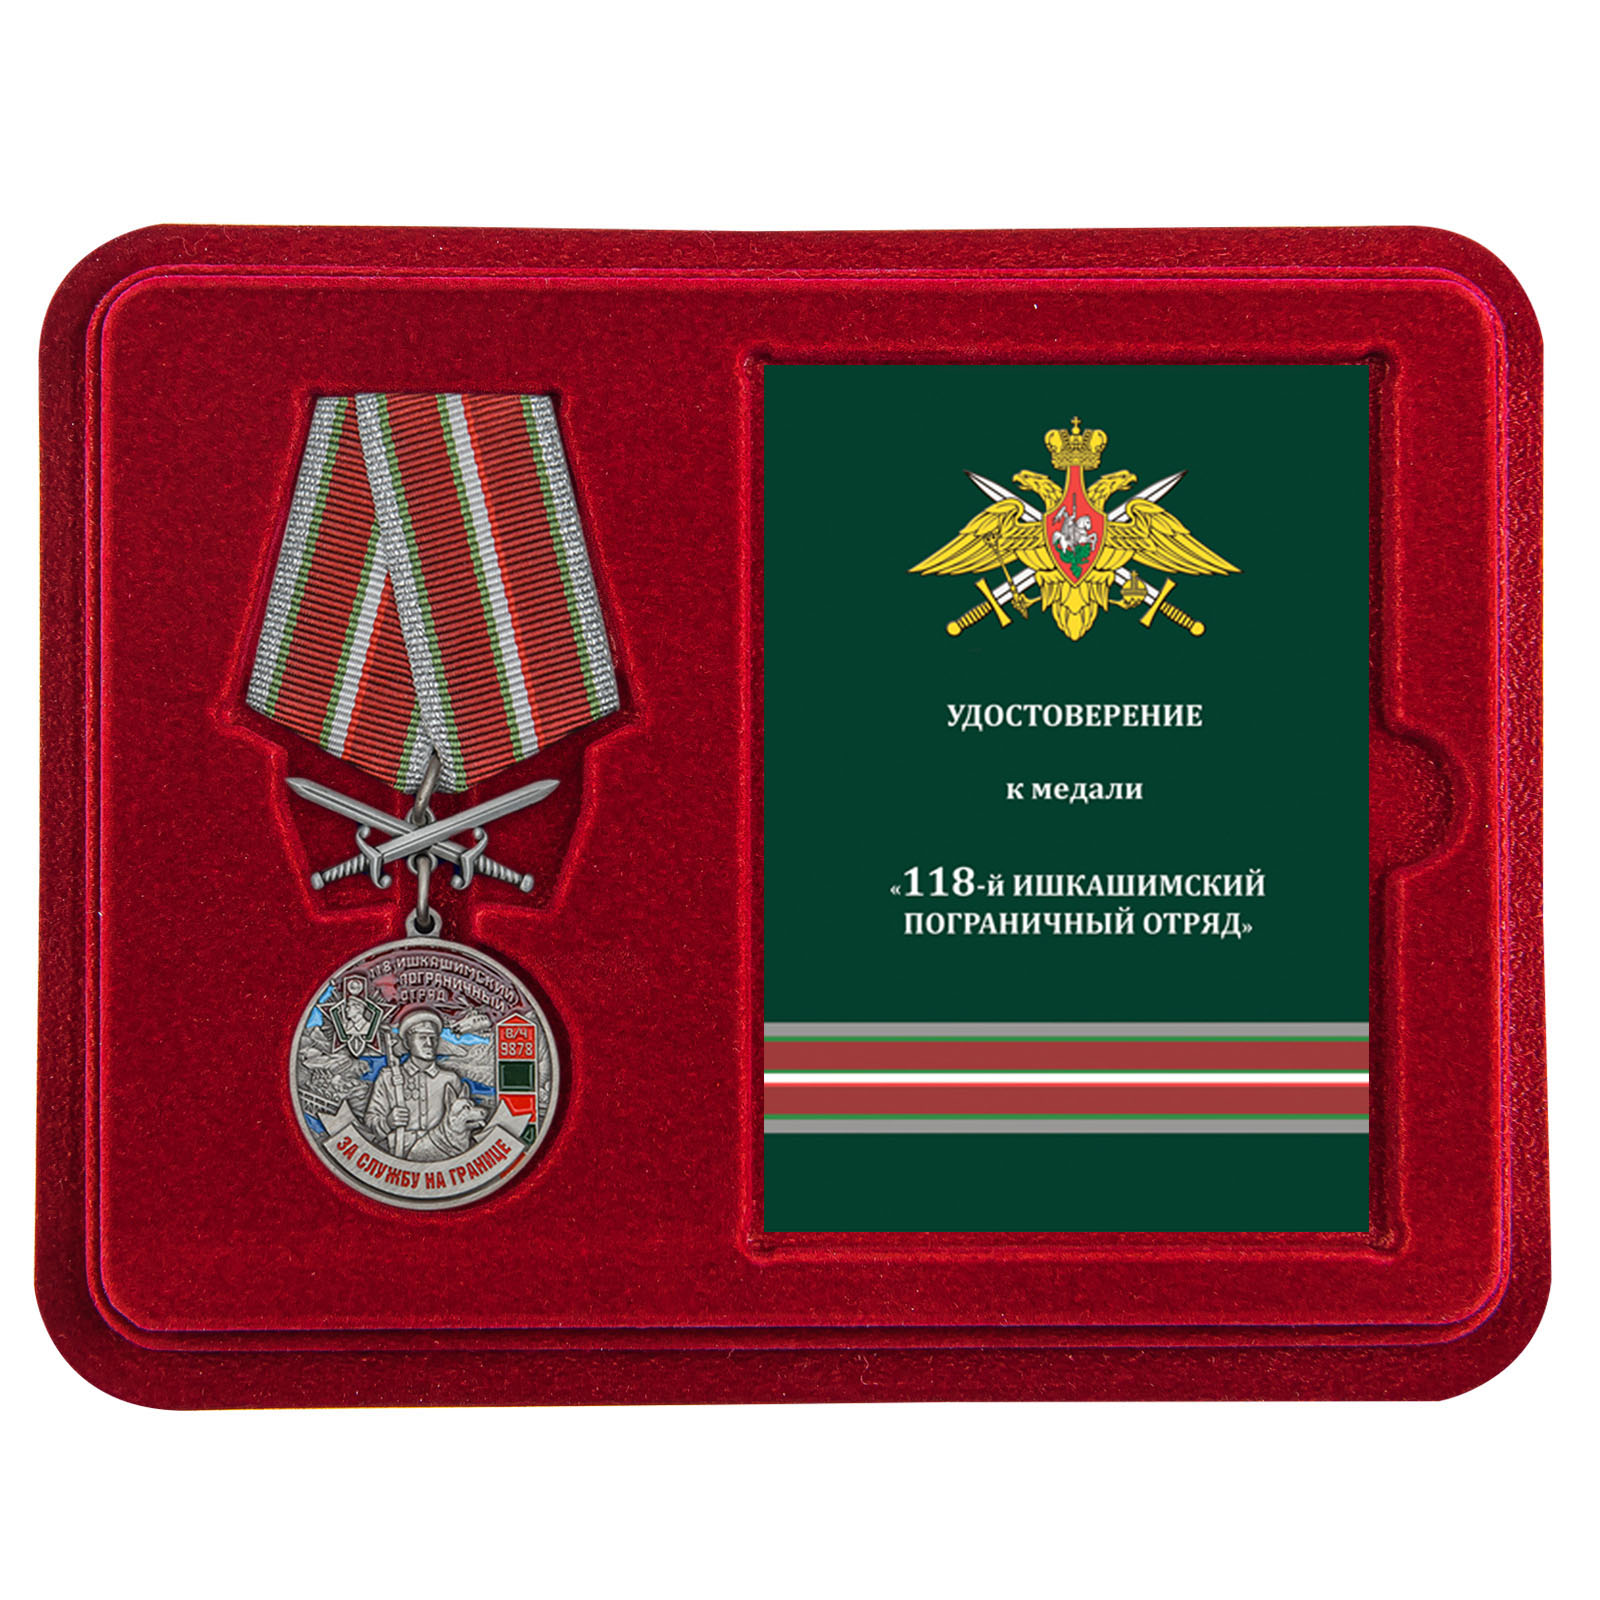 Купить медаль За службу в Ишкашимском пограничном отряде онлайн